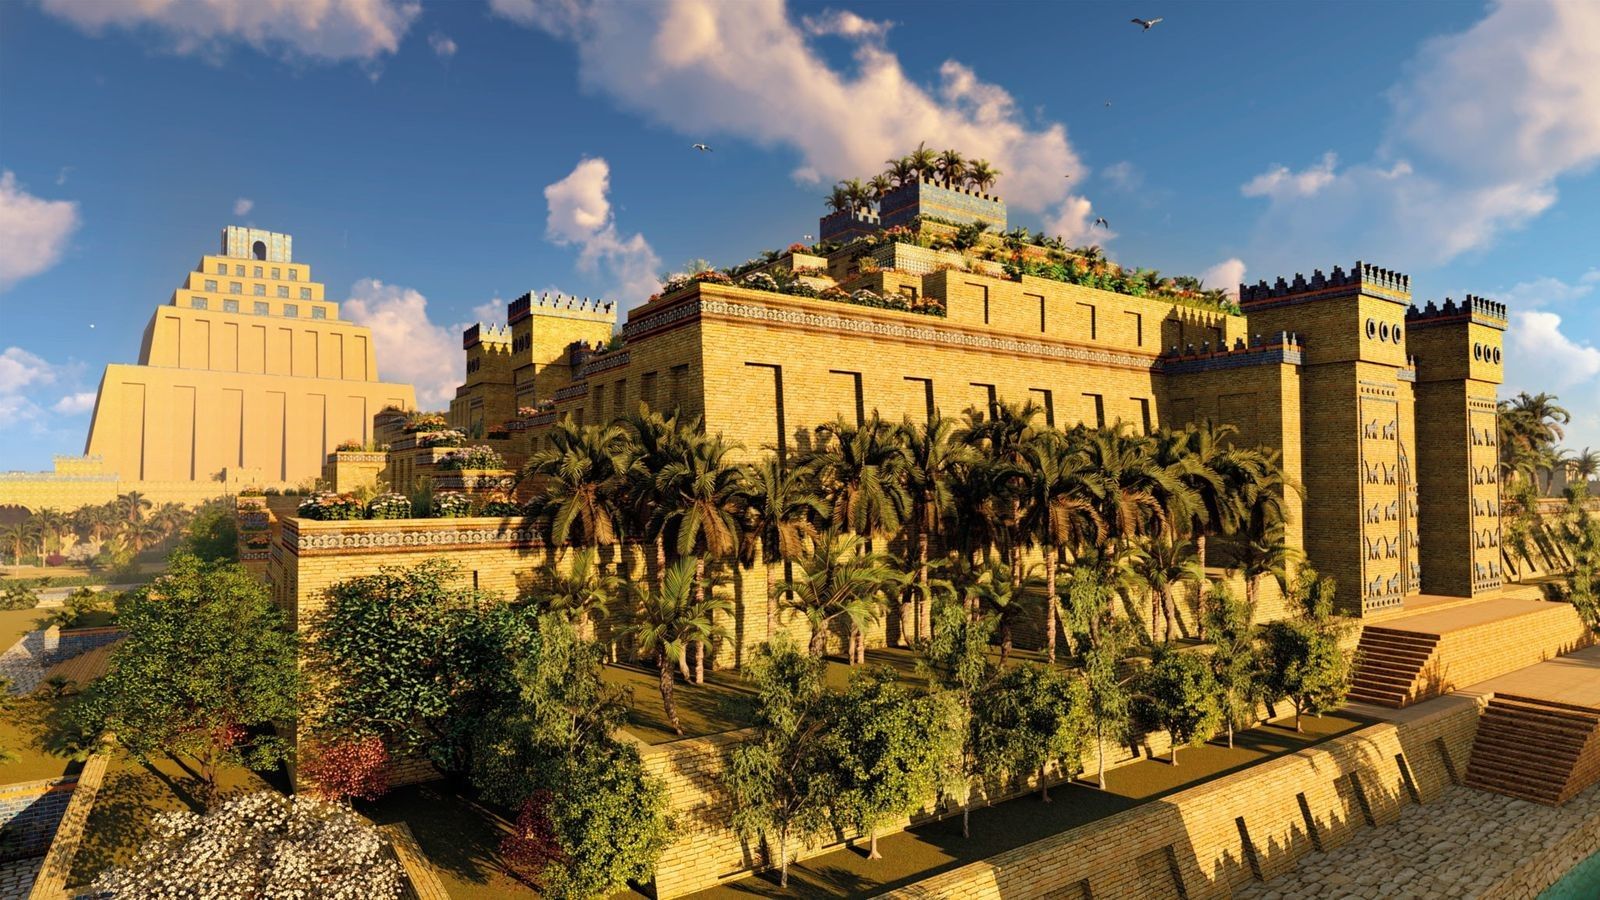 Les jardins suspendus de Babylone, la plus mystérieuse des sept merveilles du monde